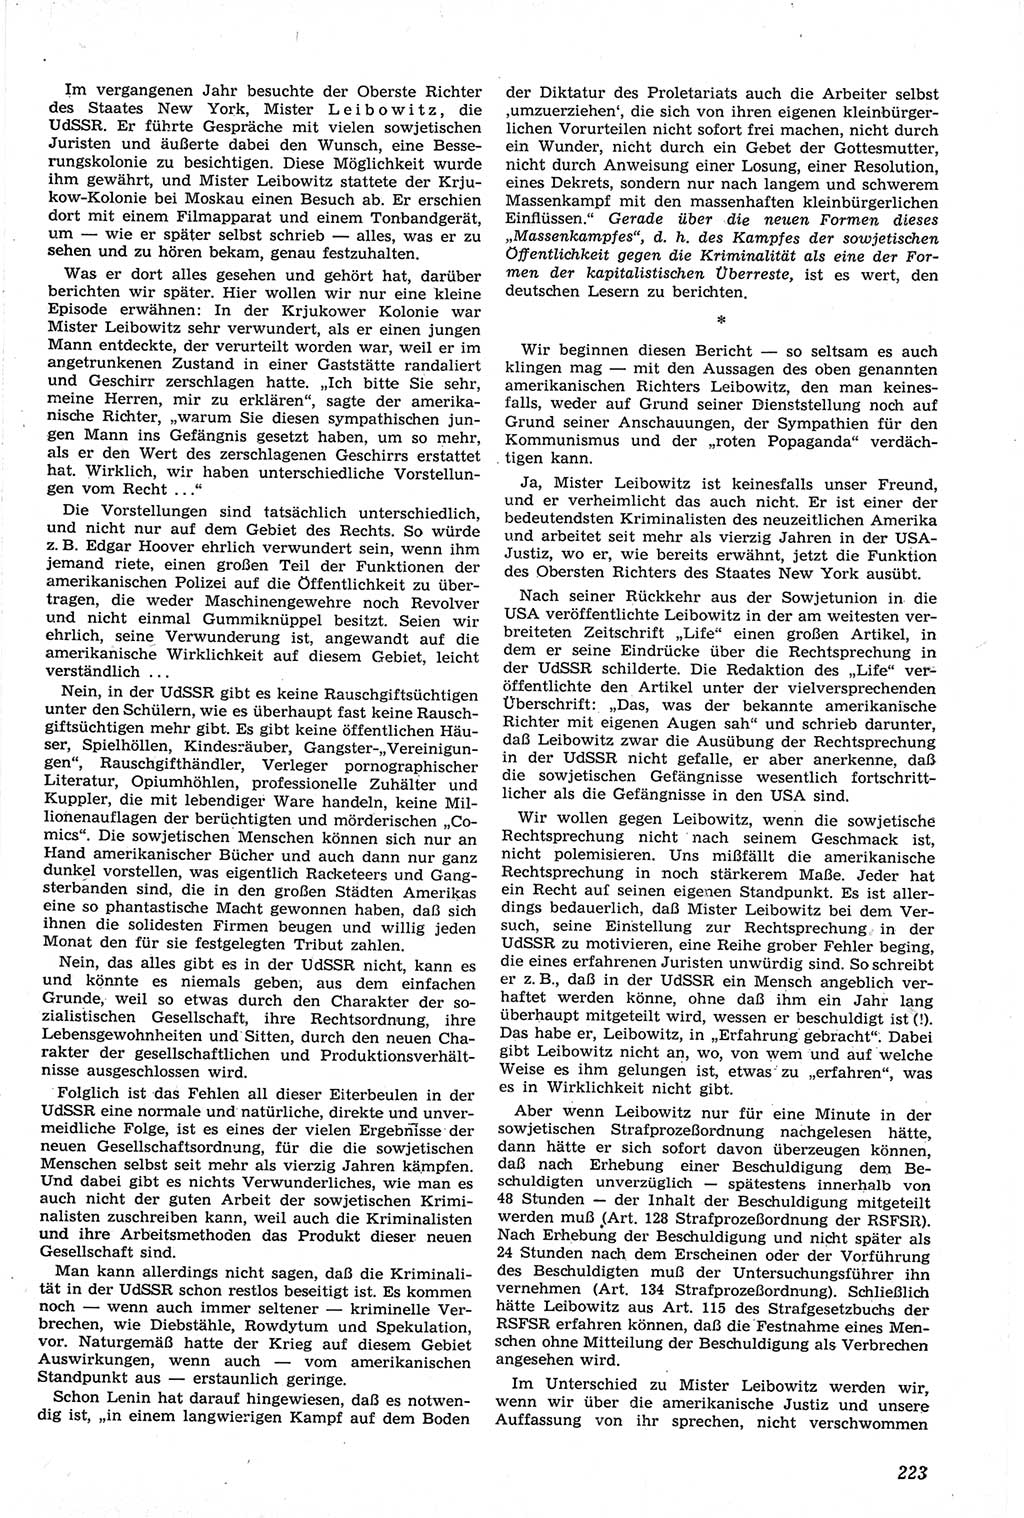 Neue Justiz (NJ), Zeitschrift für Recht und Rechtswissenschaft [Deutsche Demokratische Republik (DDR)], 14. Jahrgang 1960, Seite 223 (NJ DDR 1960, S. 223)